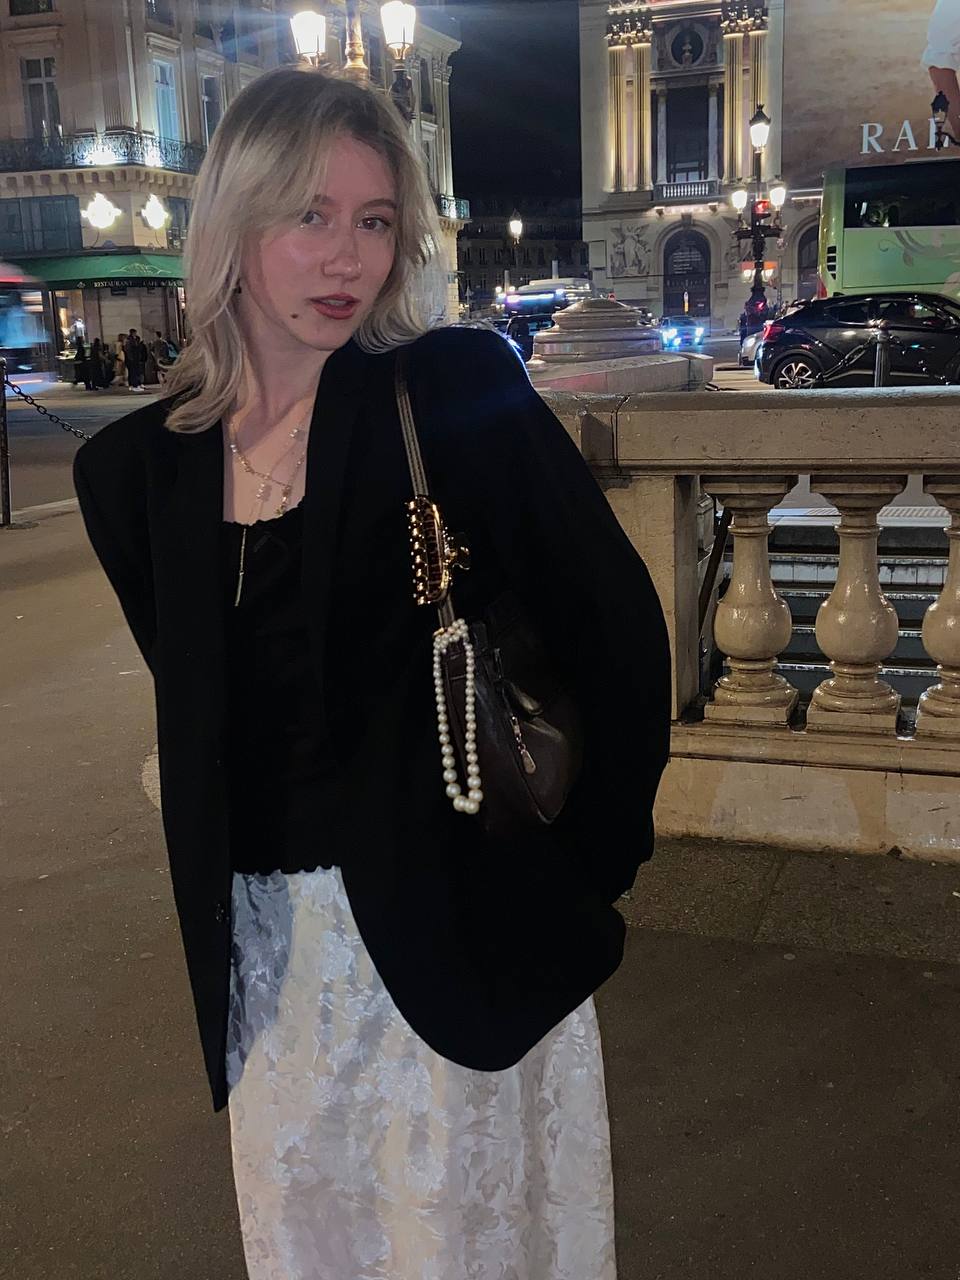 Фото девушки в белой юбке и черном пиджаке. Из аксессуаров – черная кожаная сумка с жемчужной подвеской.